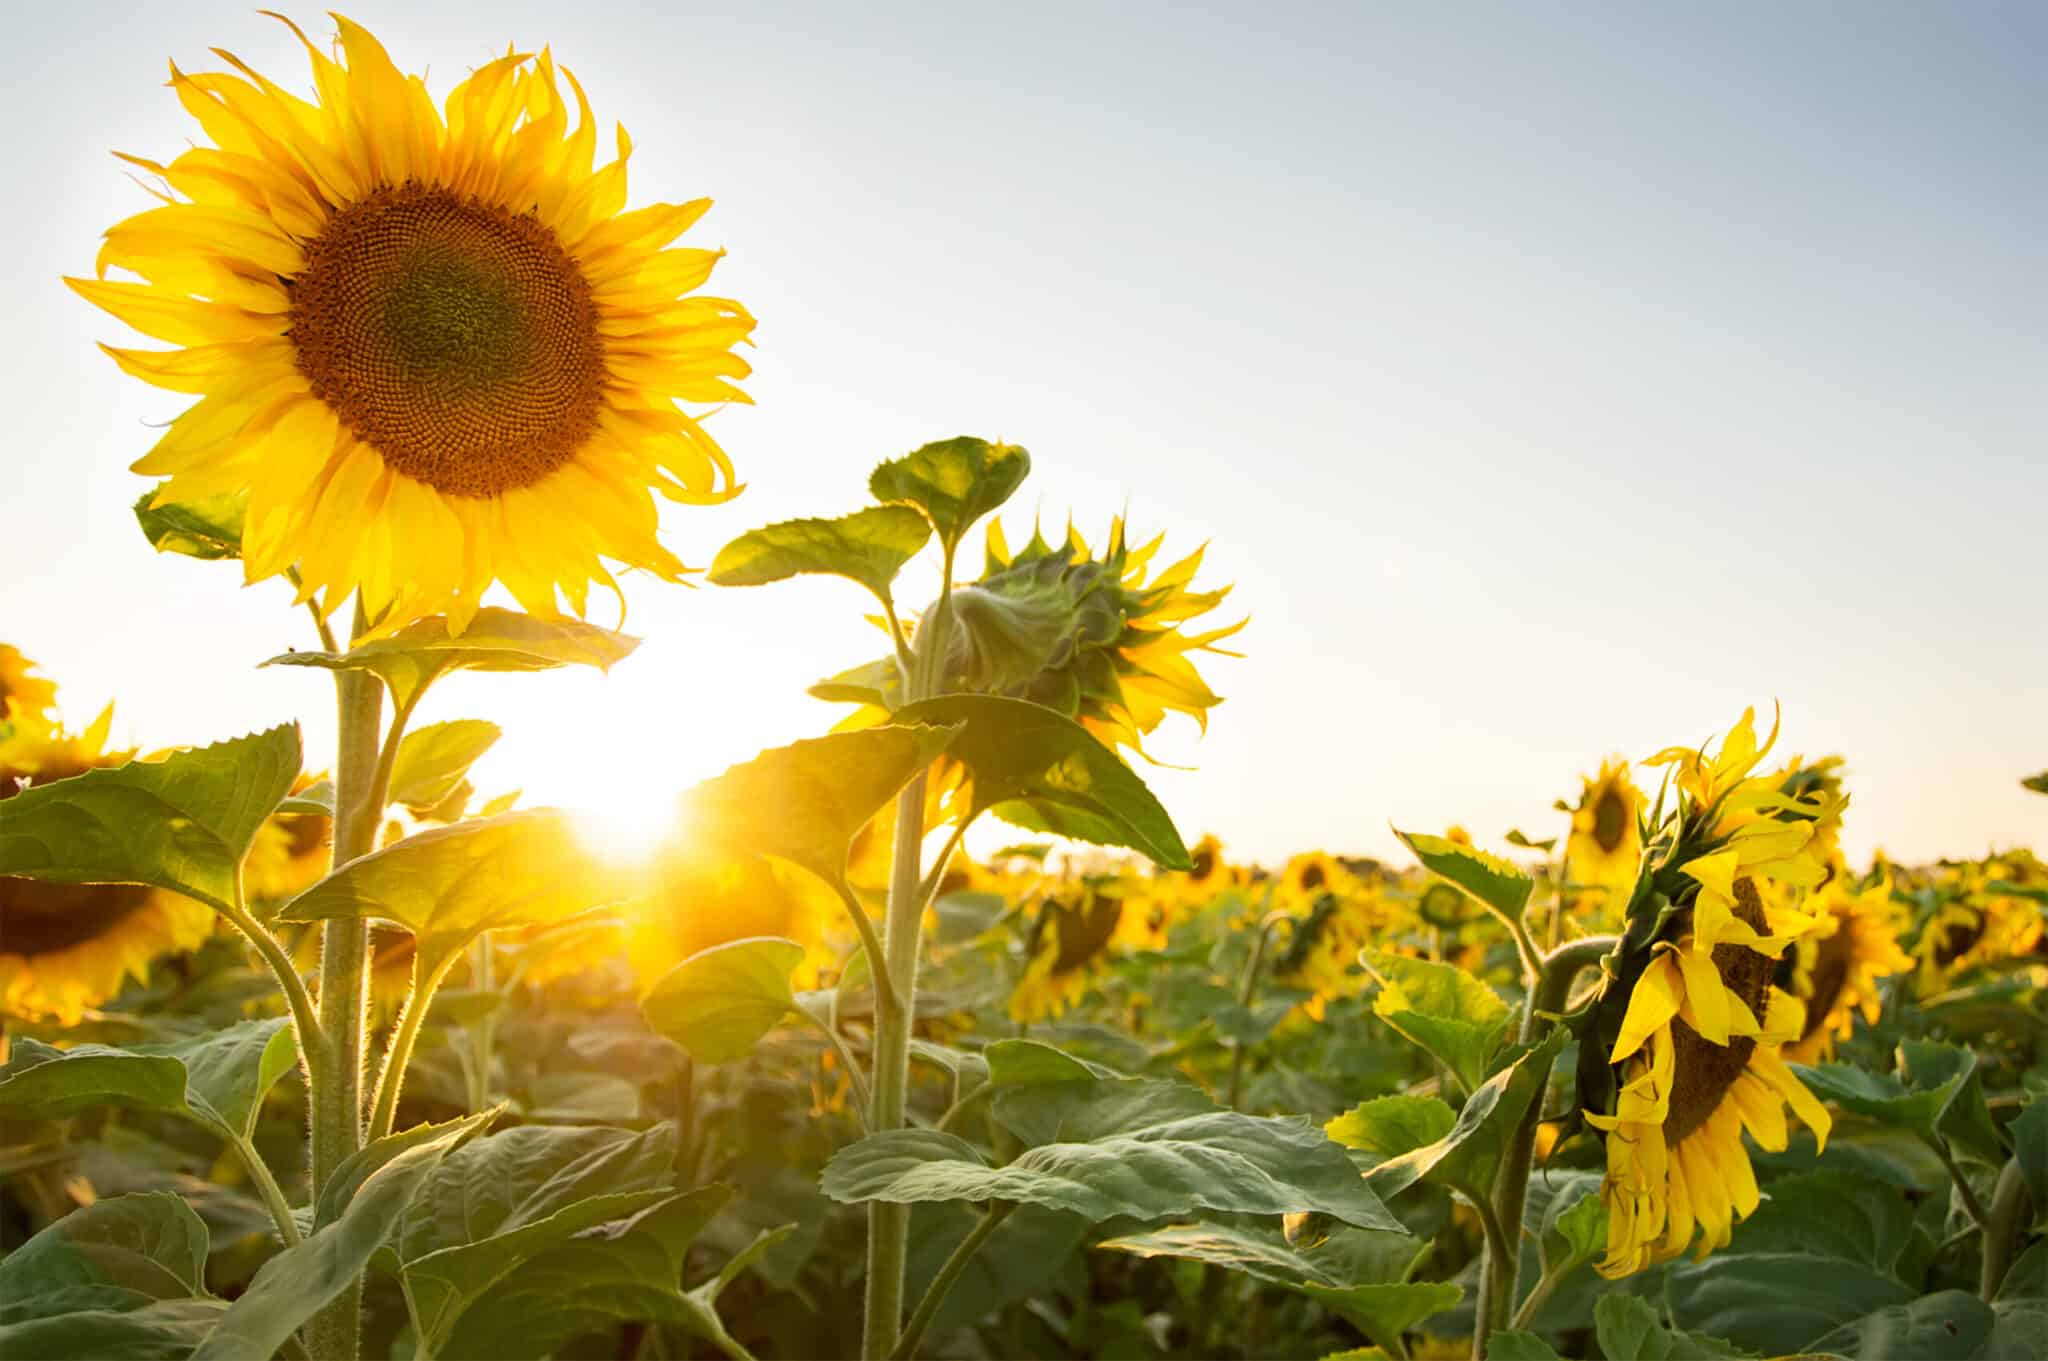 The Sunflower Festival Returns to Copper Creek Farm – June 2022 